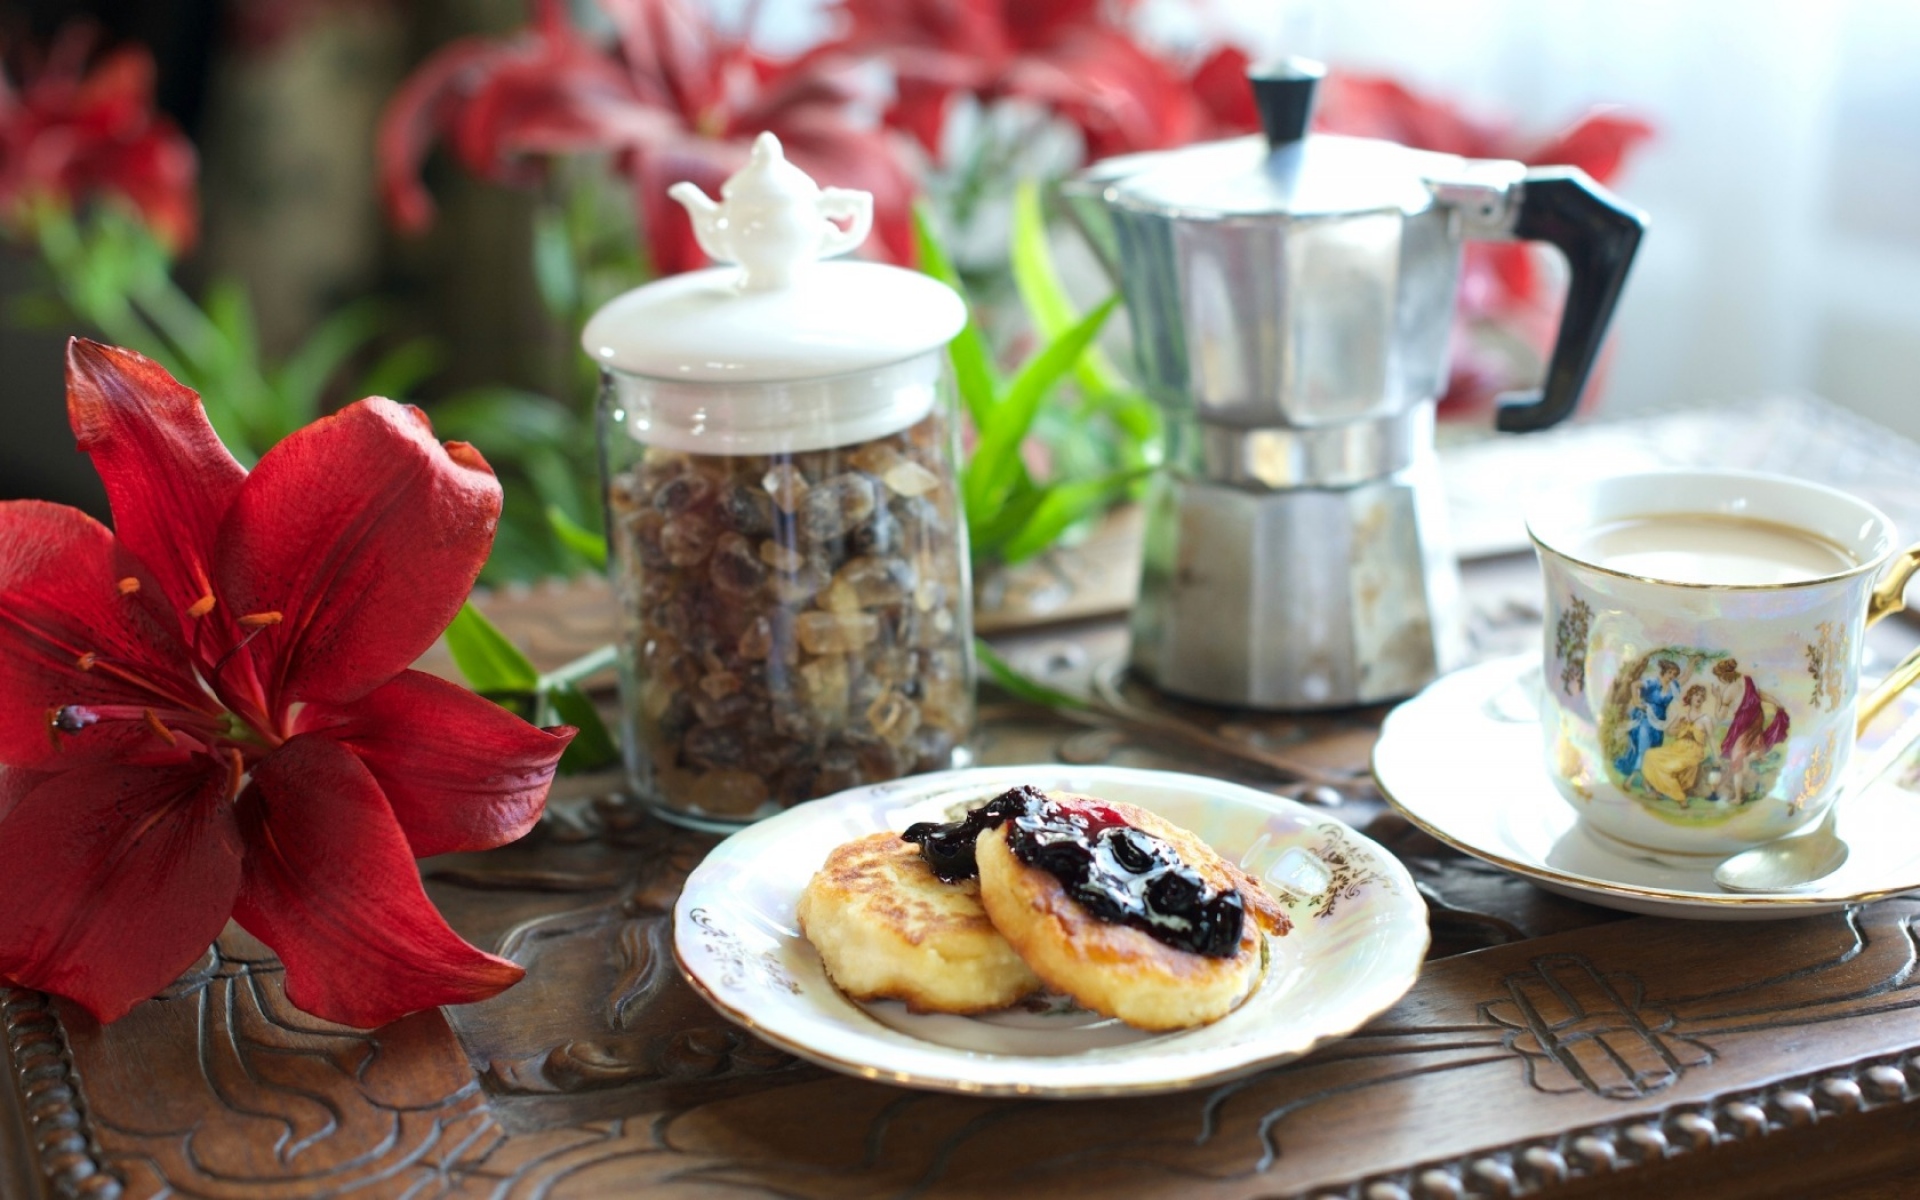 Картинки Завтрак, кофе, оладьи, джемы, лилия фото и обои на рабочий стол